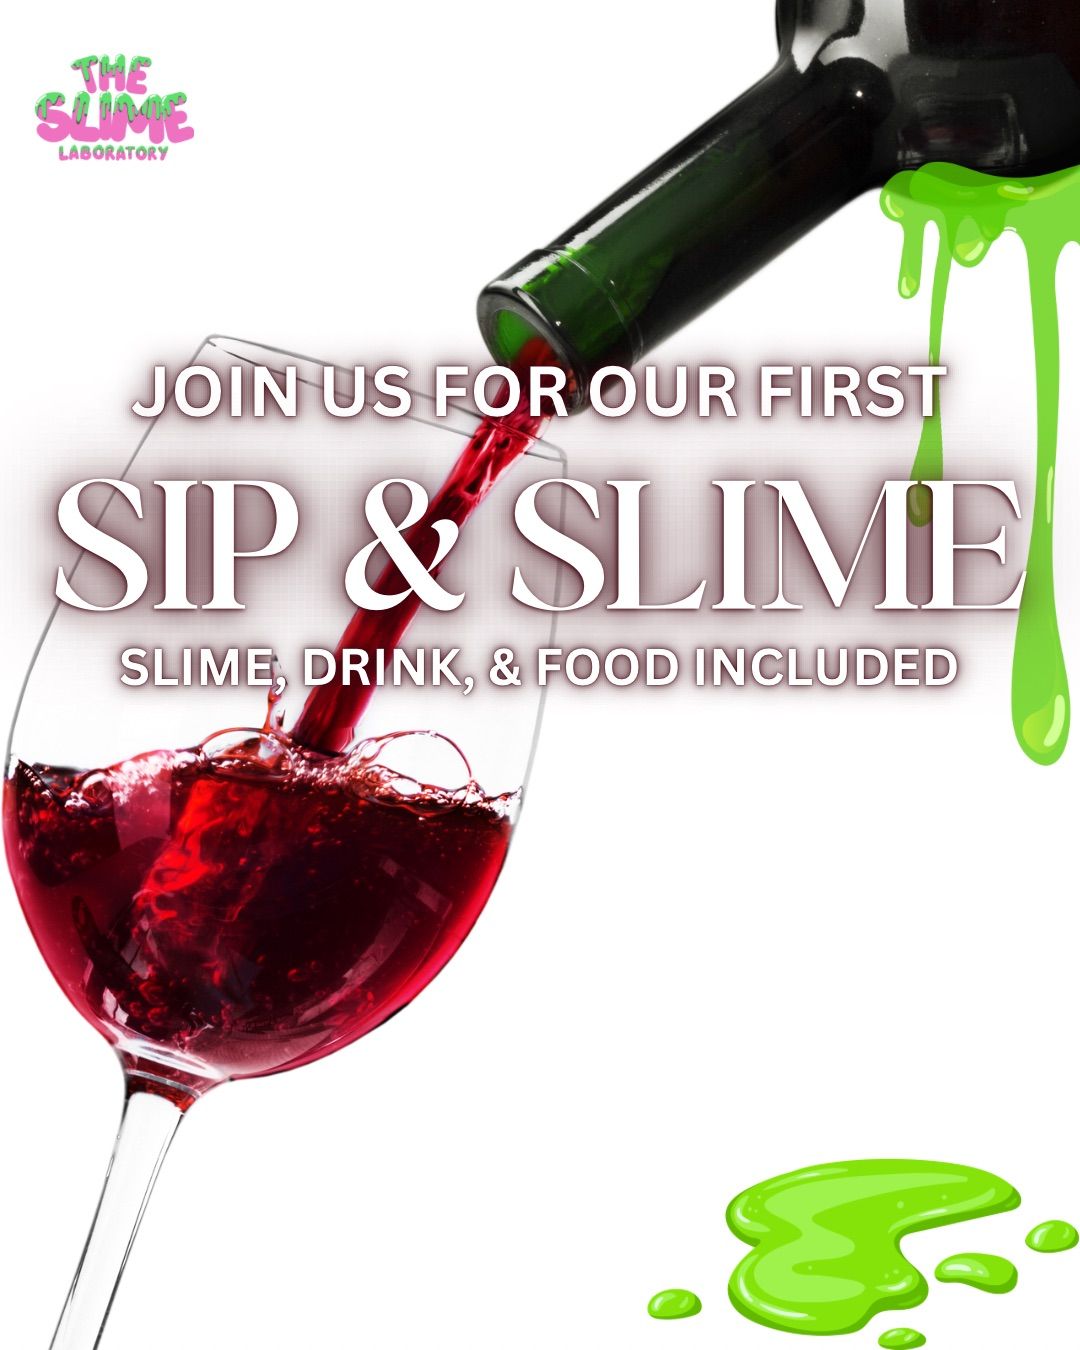 Sip & Slime